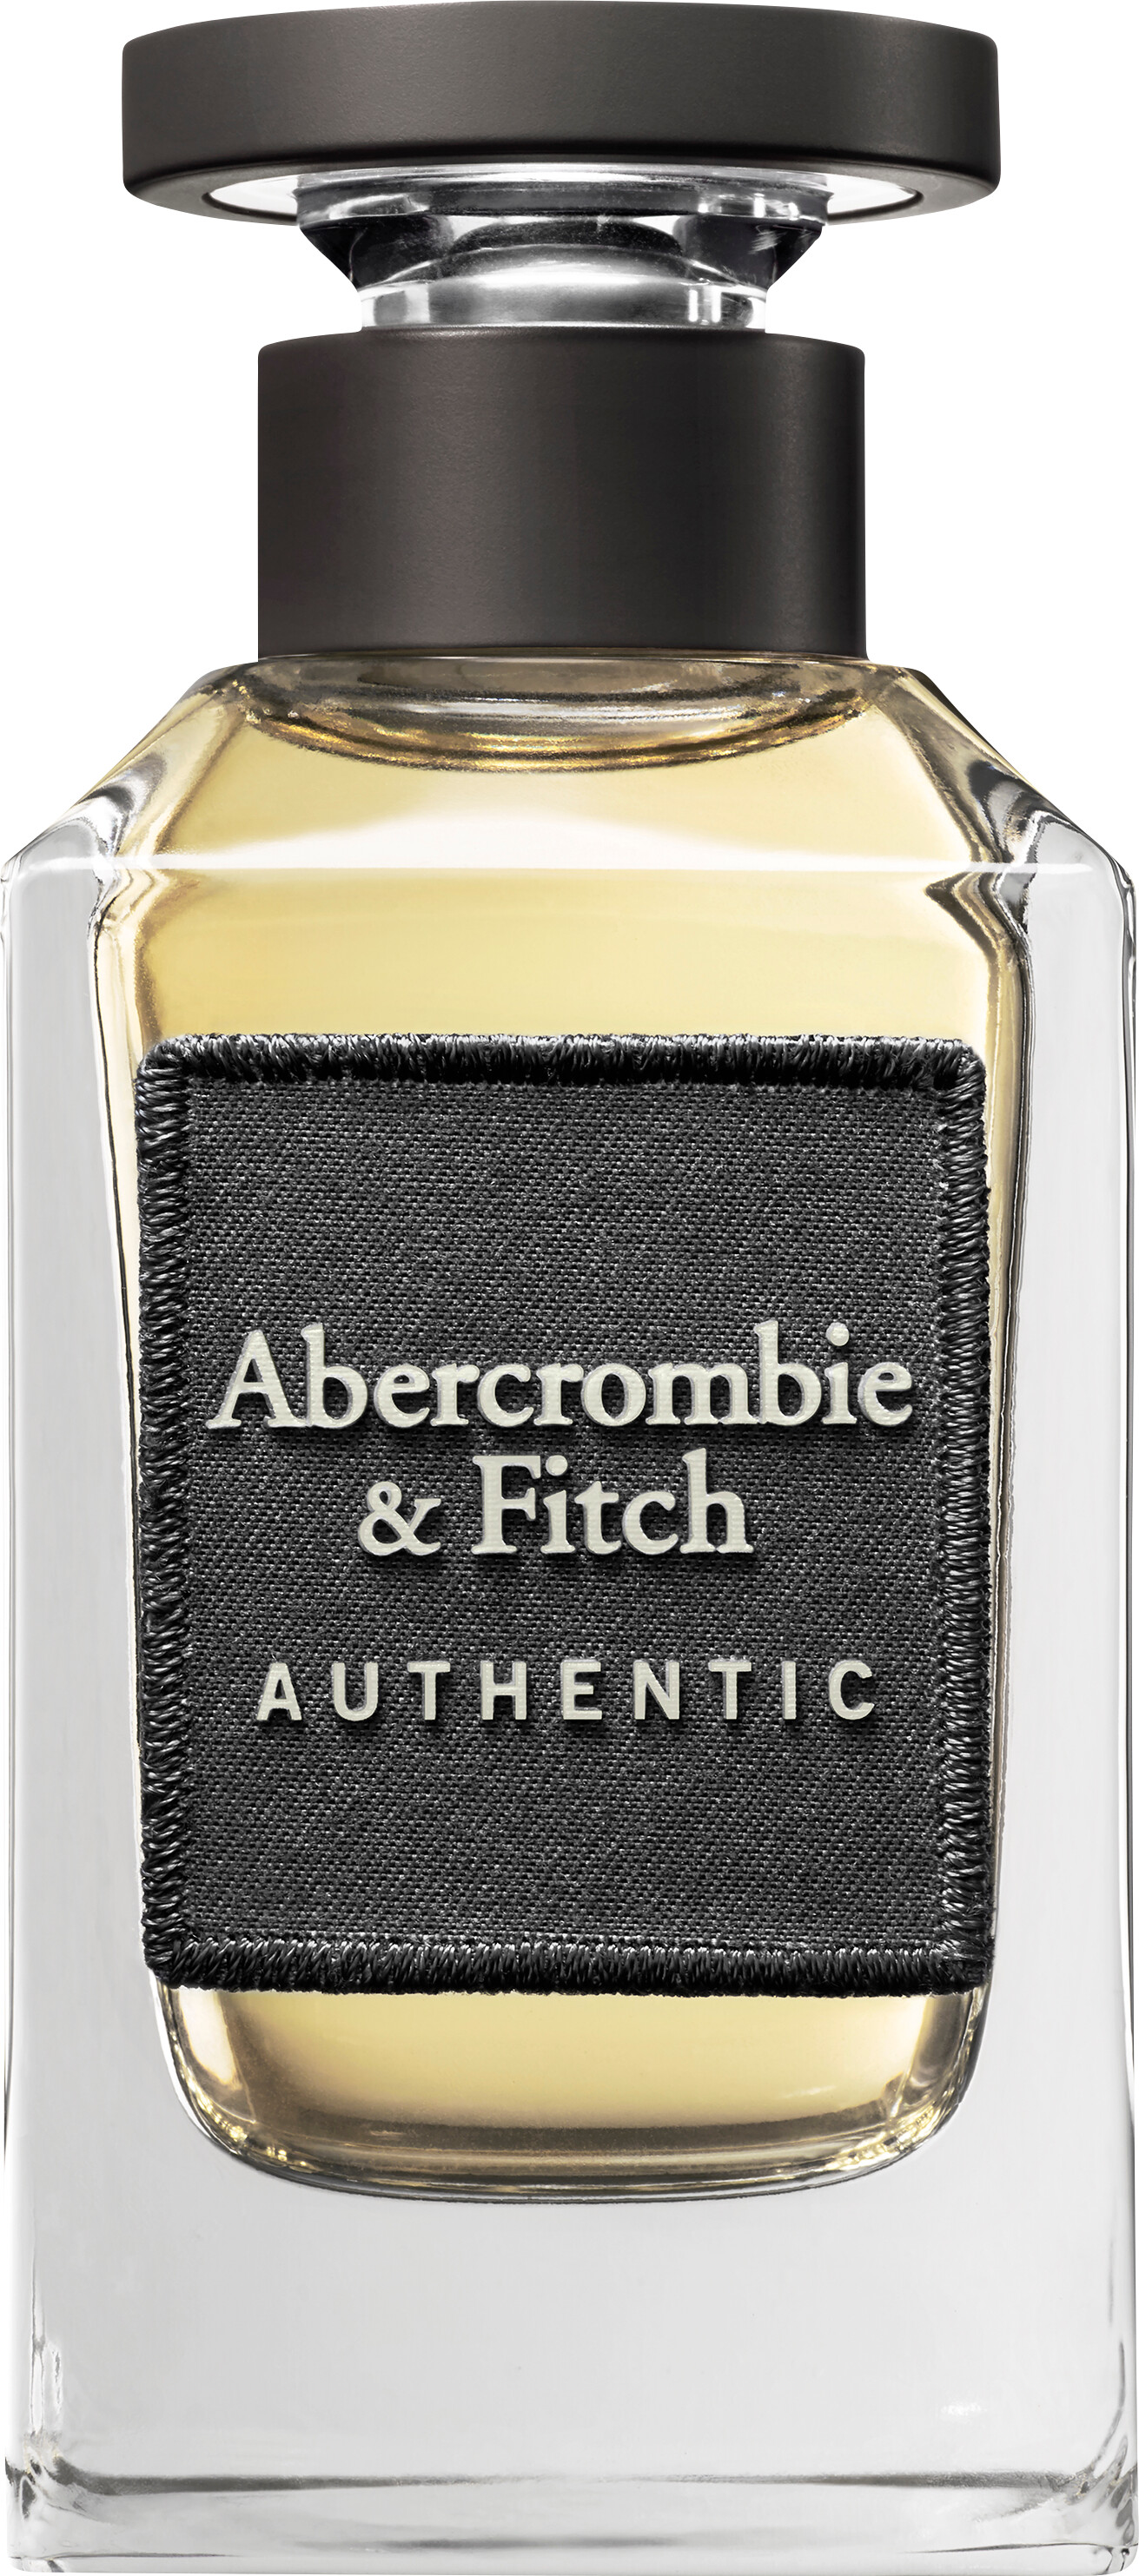 Abercrombie & Fitch Authentic For Men Eau de Toilette Spray 100ml